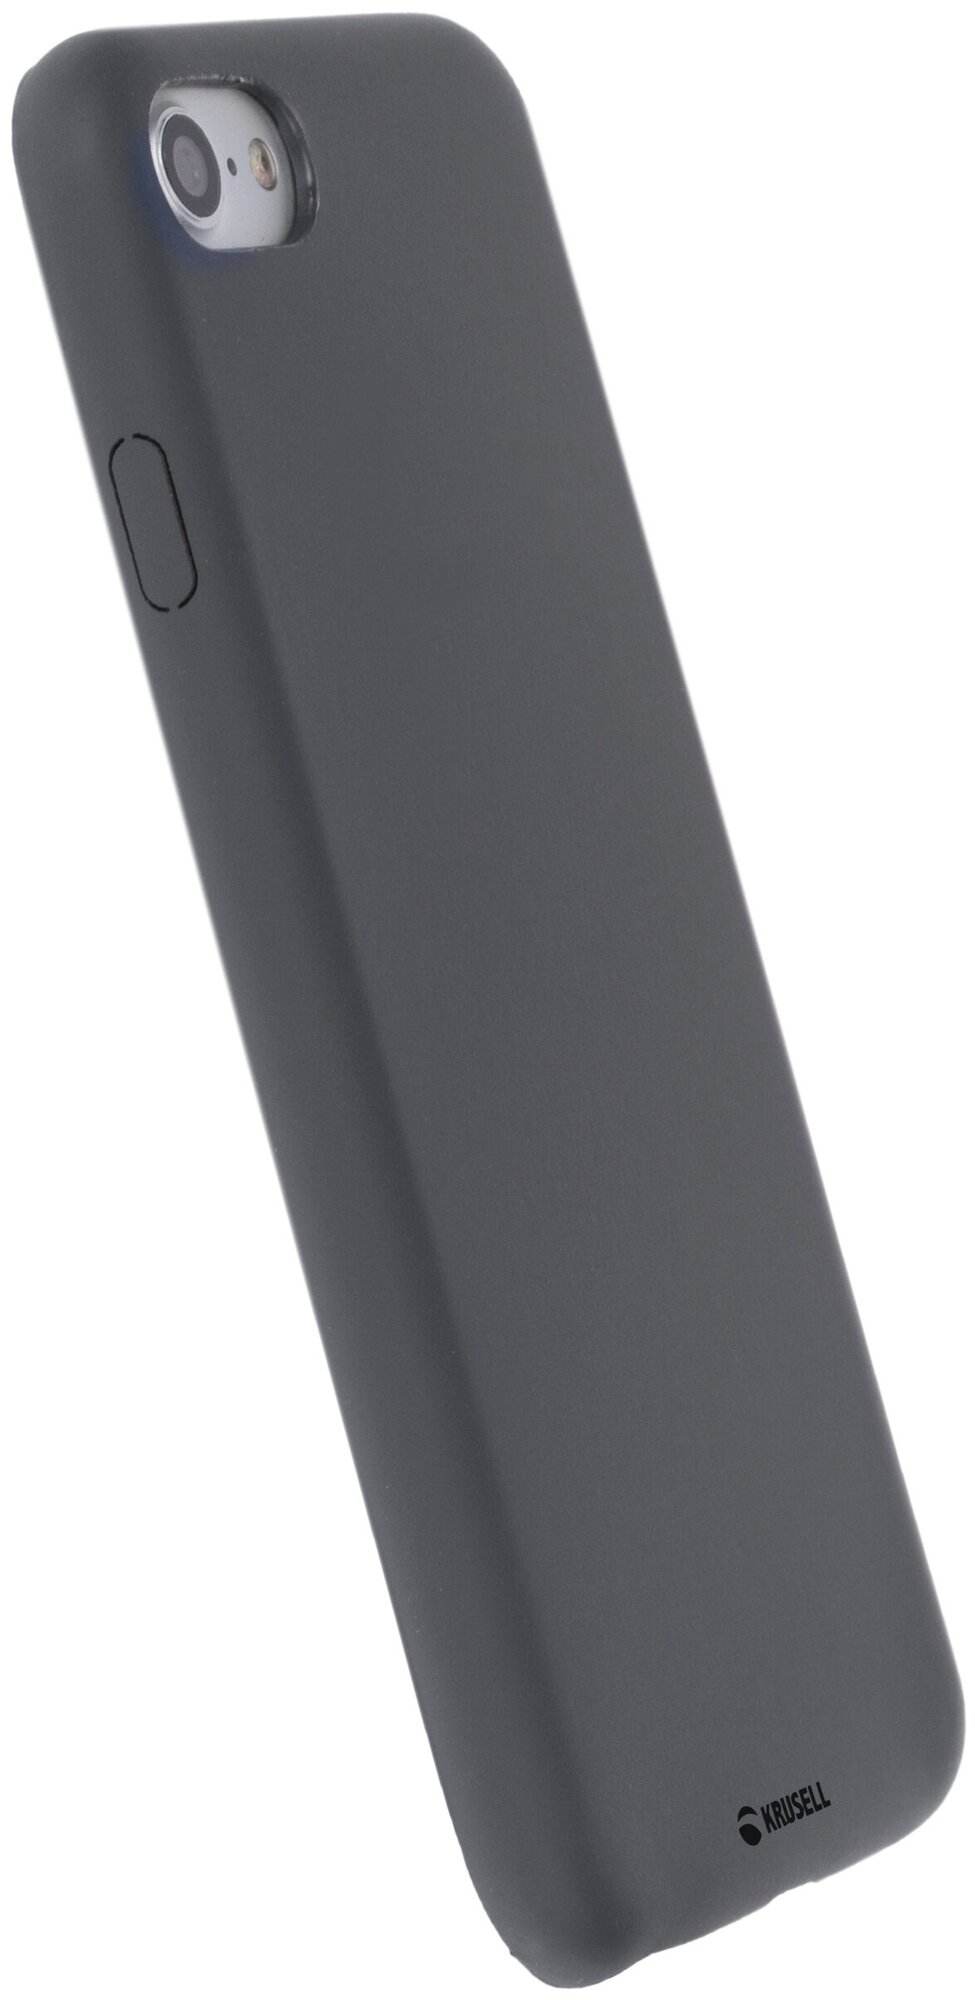 Чехол накладка BELLö для Apple iPhone 7/8. Цвет серый. Невероятно аккуратный чехол, который улучшает дизайн вашего телефона.